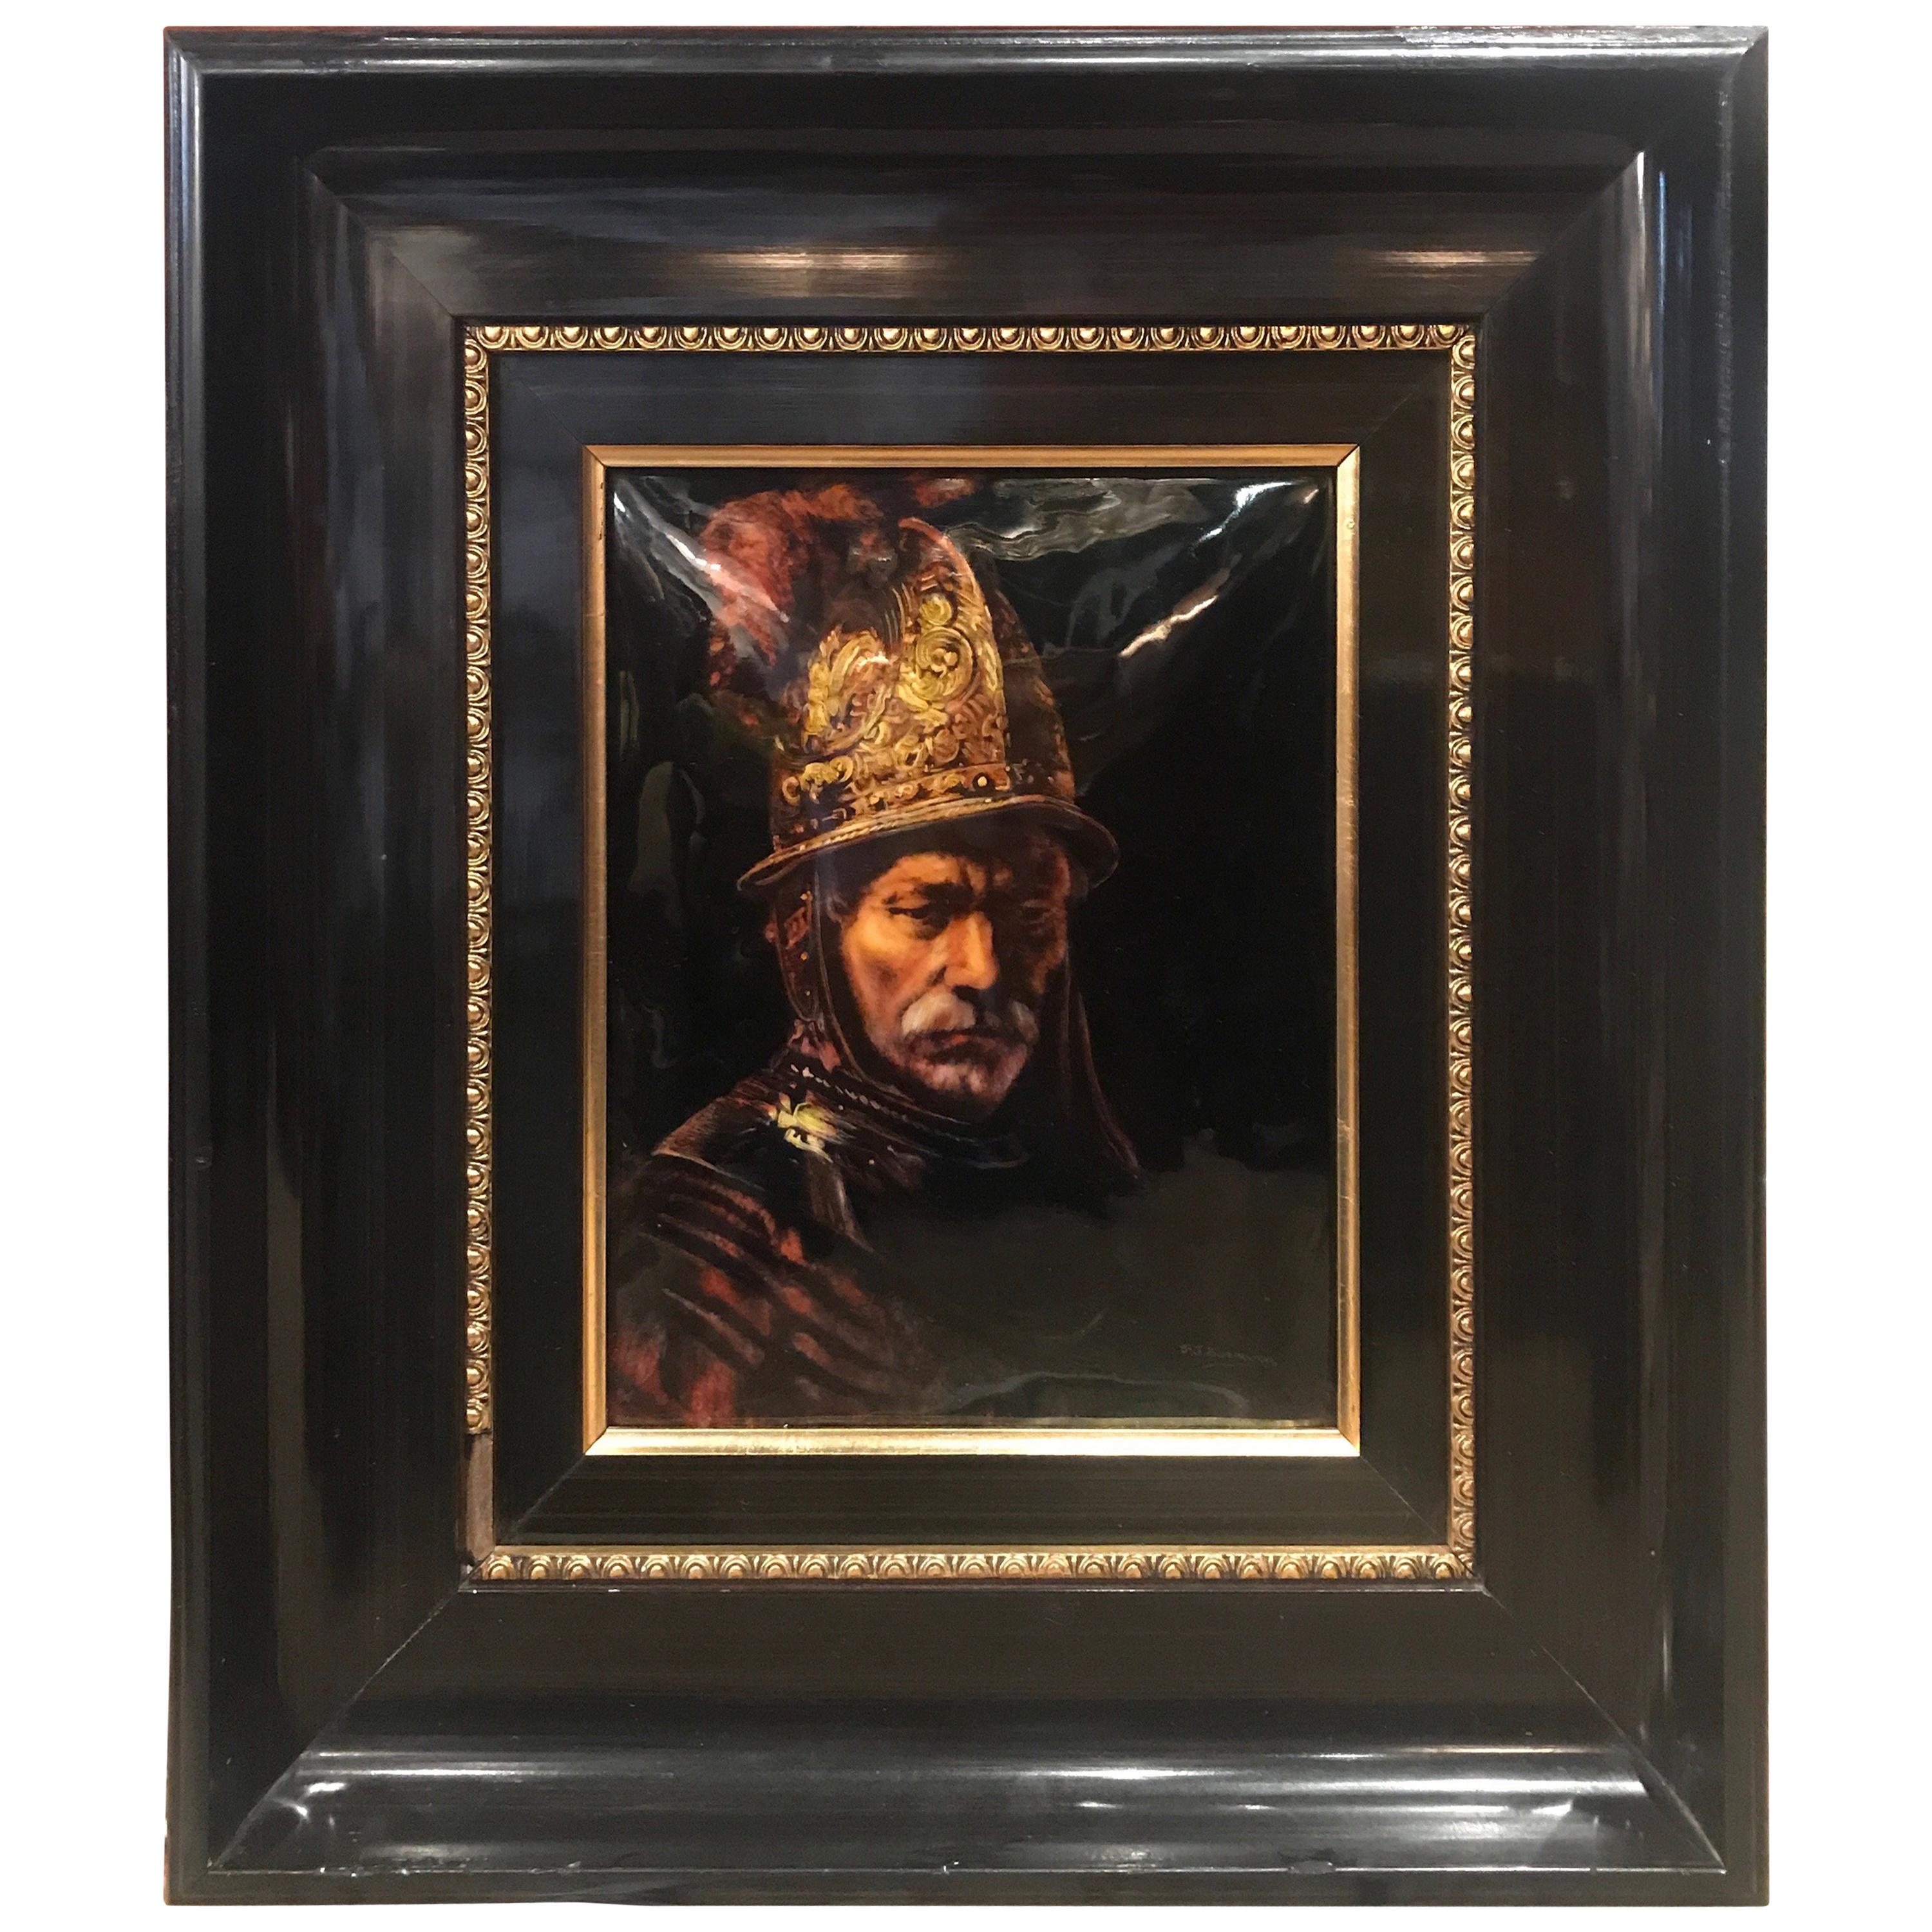 A Hand Painted Limoges Enamel Portrait of a Conquistador